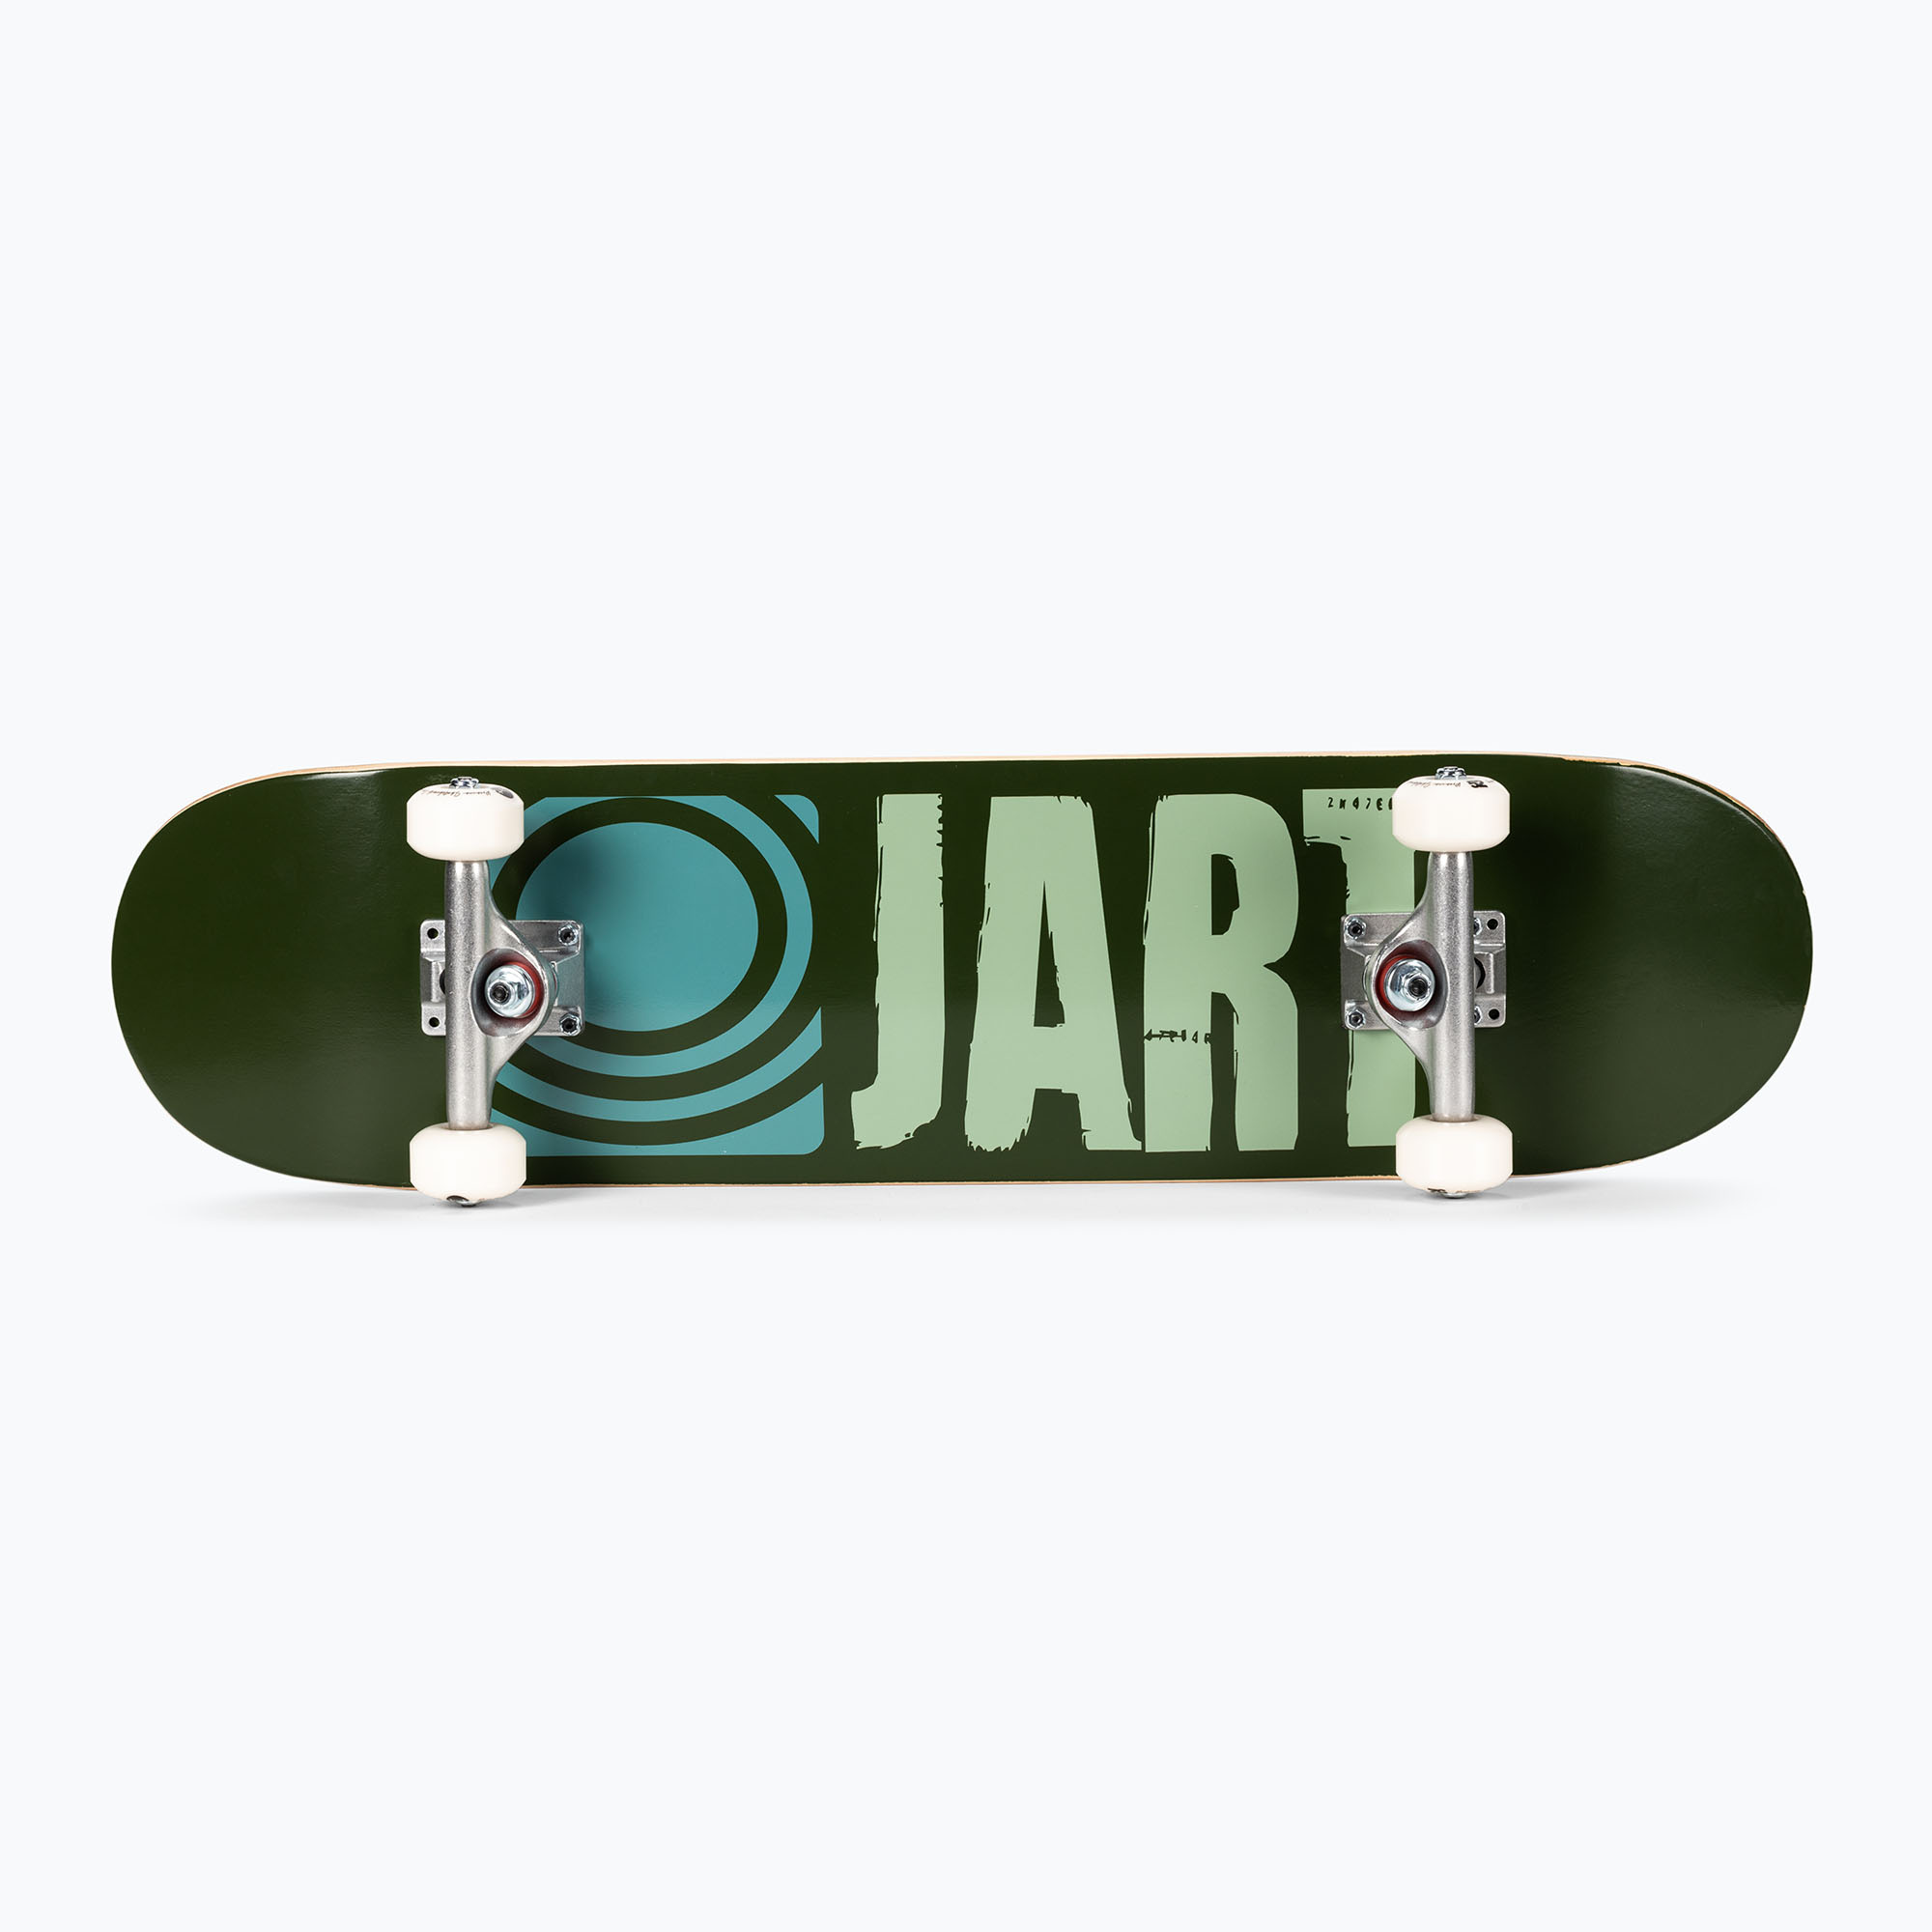 Jart Classic Complete скейтборд зелен JACO0022A005